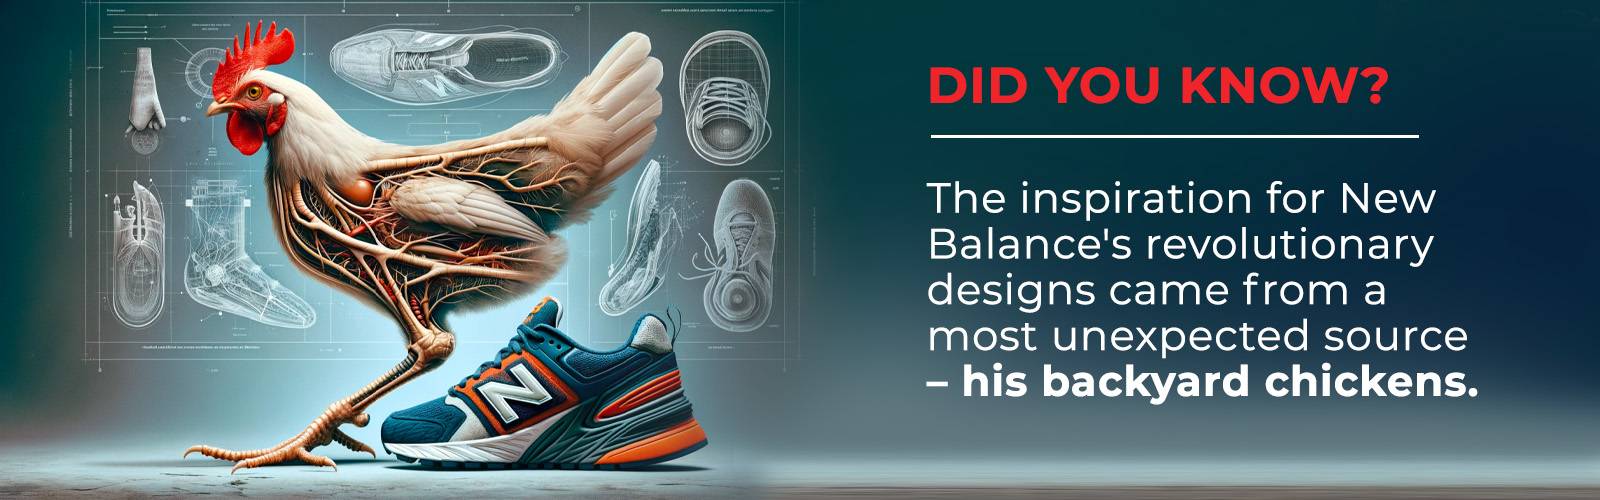 ¿Cómo surgió la idea de diseño de New Balance?